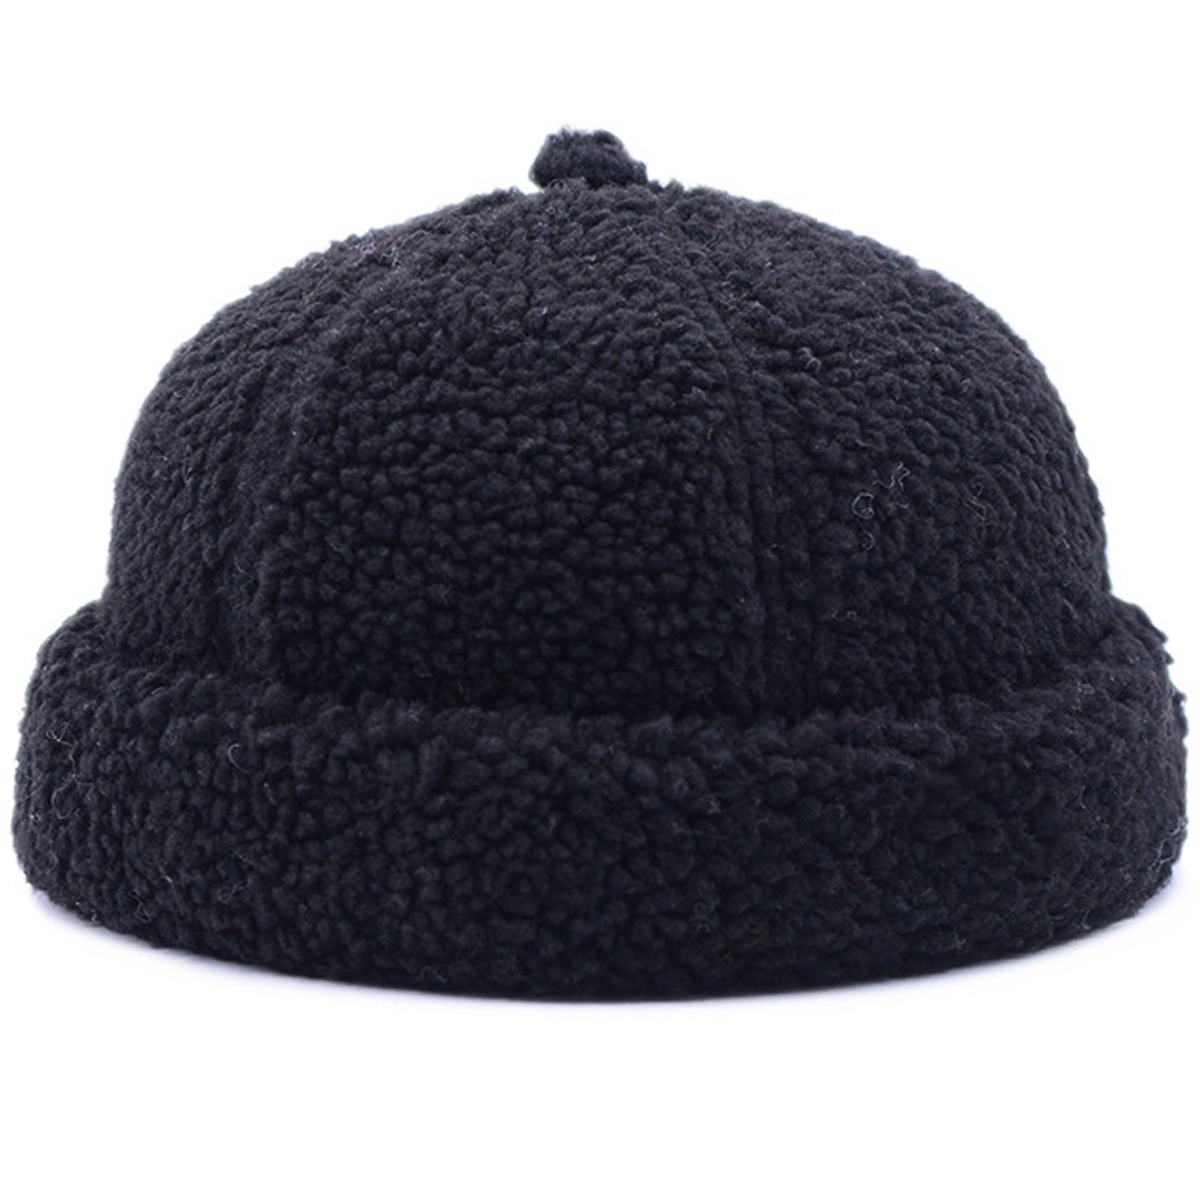 Mũ tròn miki hat lông cừu ấm áp (MU14), nón vành tròn thủy thủ mùa đông thời trang nam nữ, mũ họa sĩ cá tính